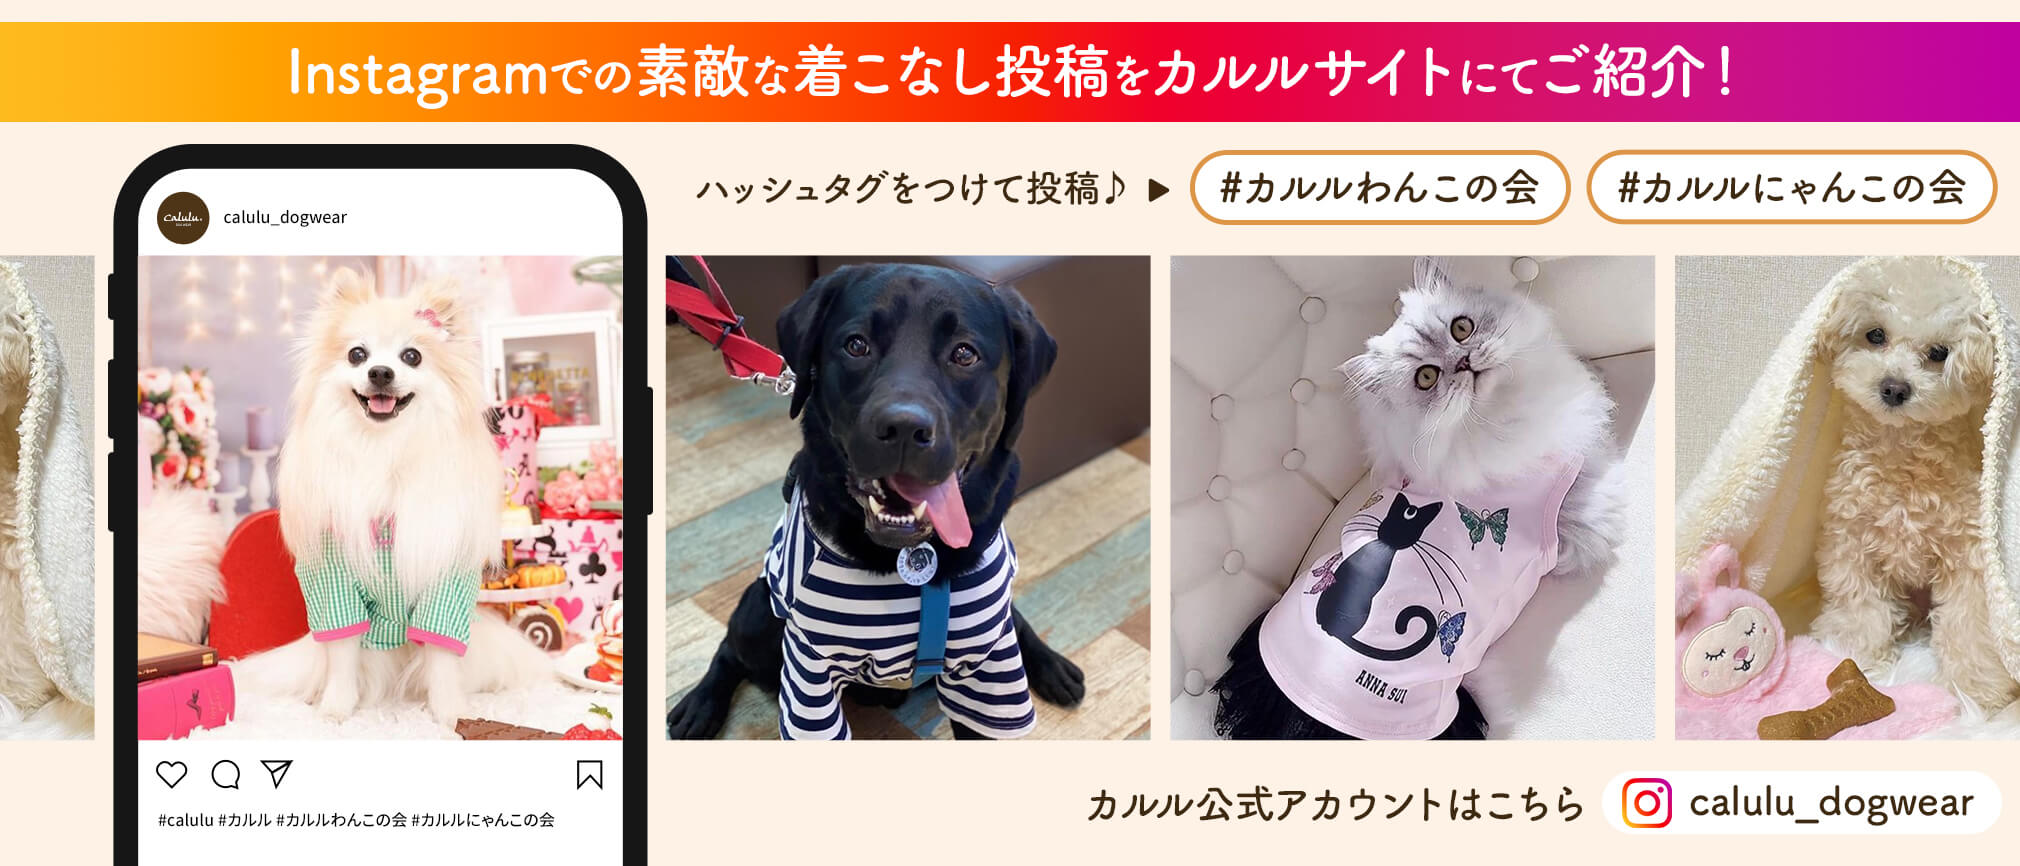 犬服・ドッグウェア・犬用ベッド・ペット用品ブランド通販サイト